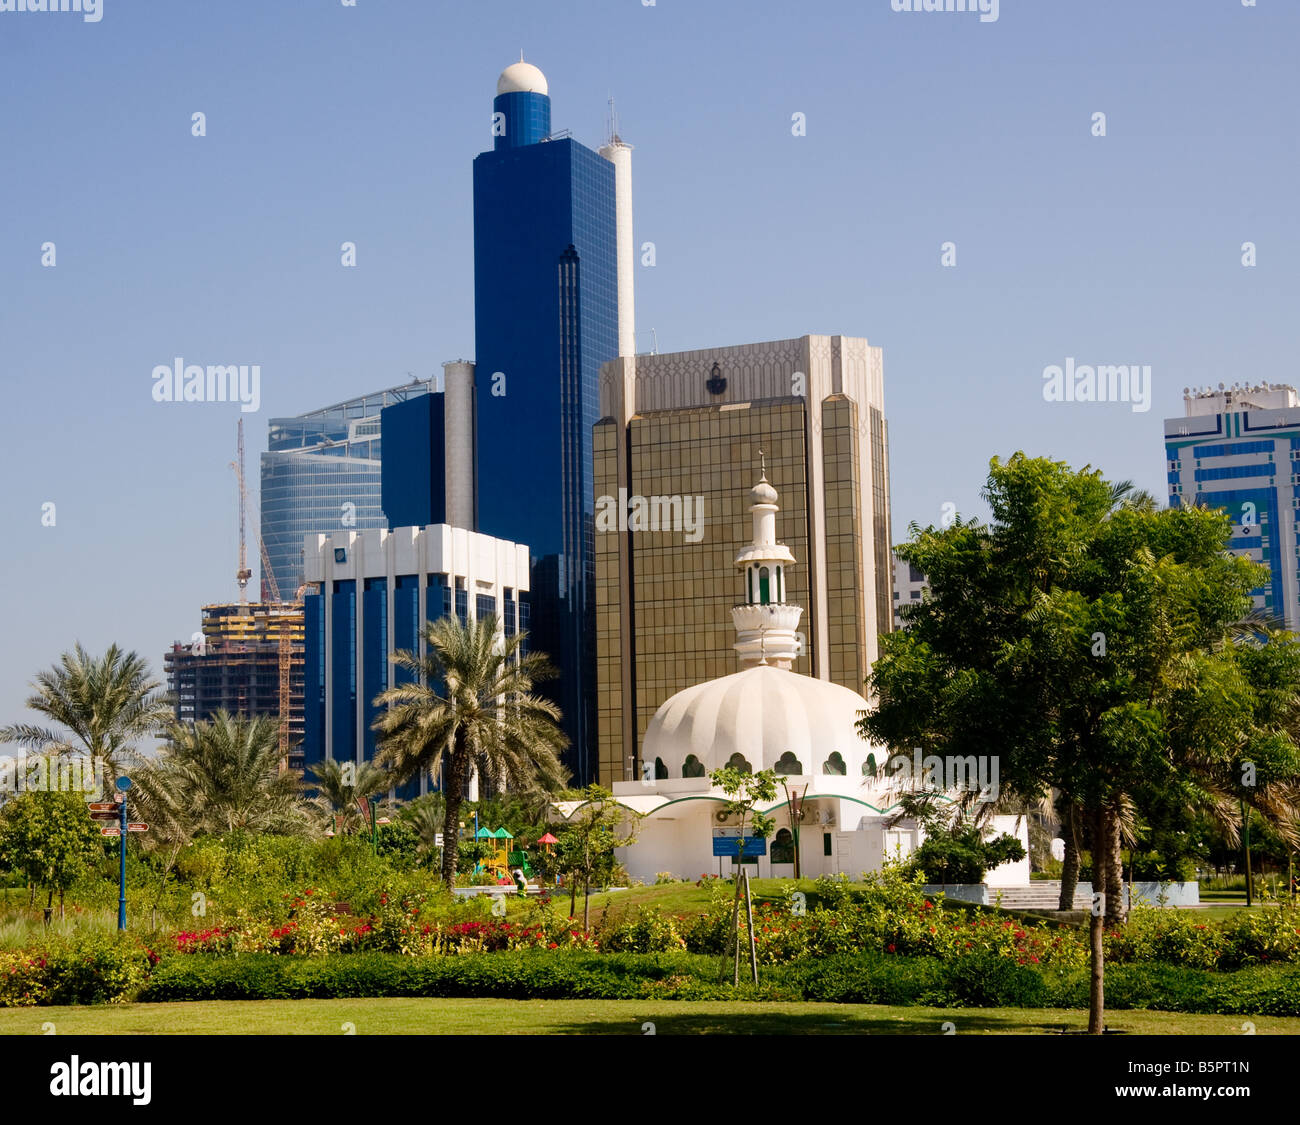 Abu Dhabi, Emiratos Árabes Unidos - bloques de oficinas Foto de stock